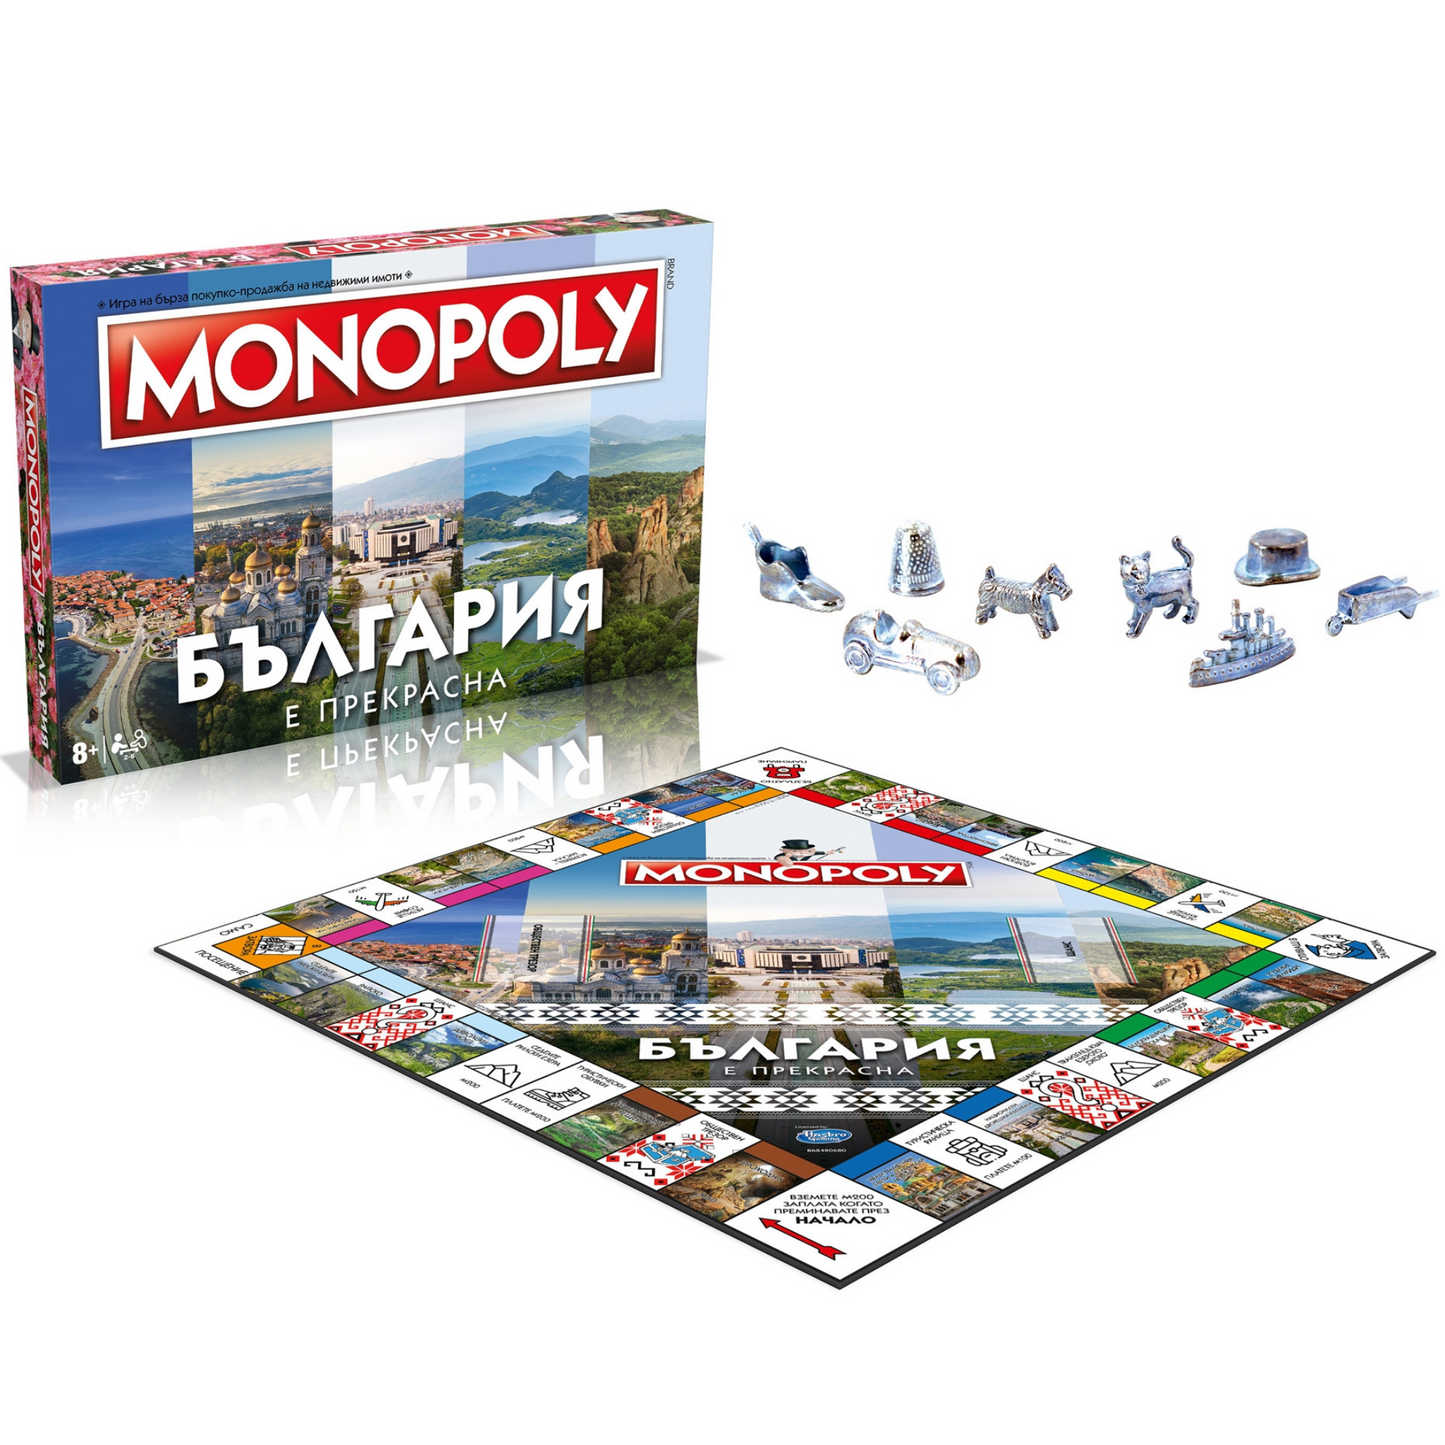 Монополи- България е прекрасна настолна игра